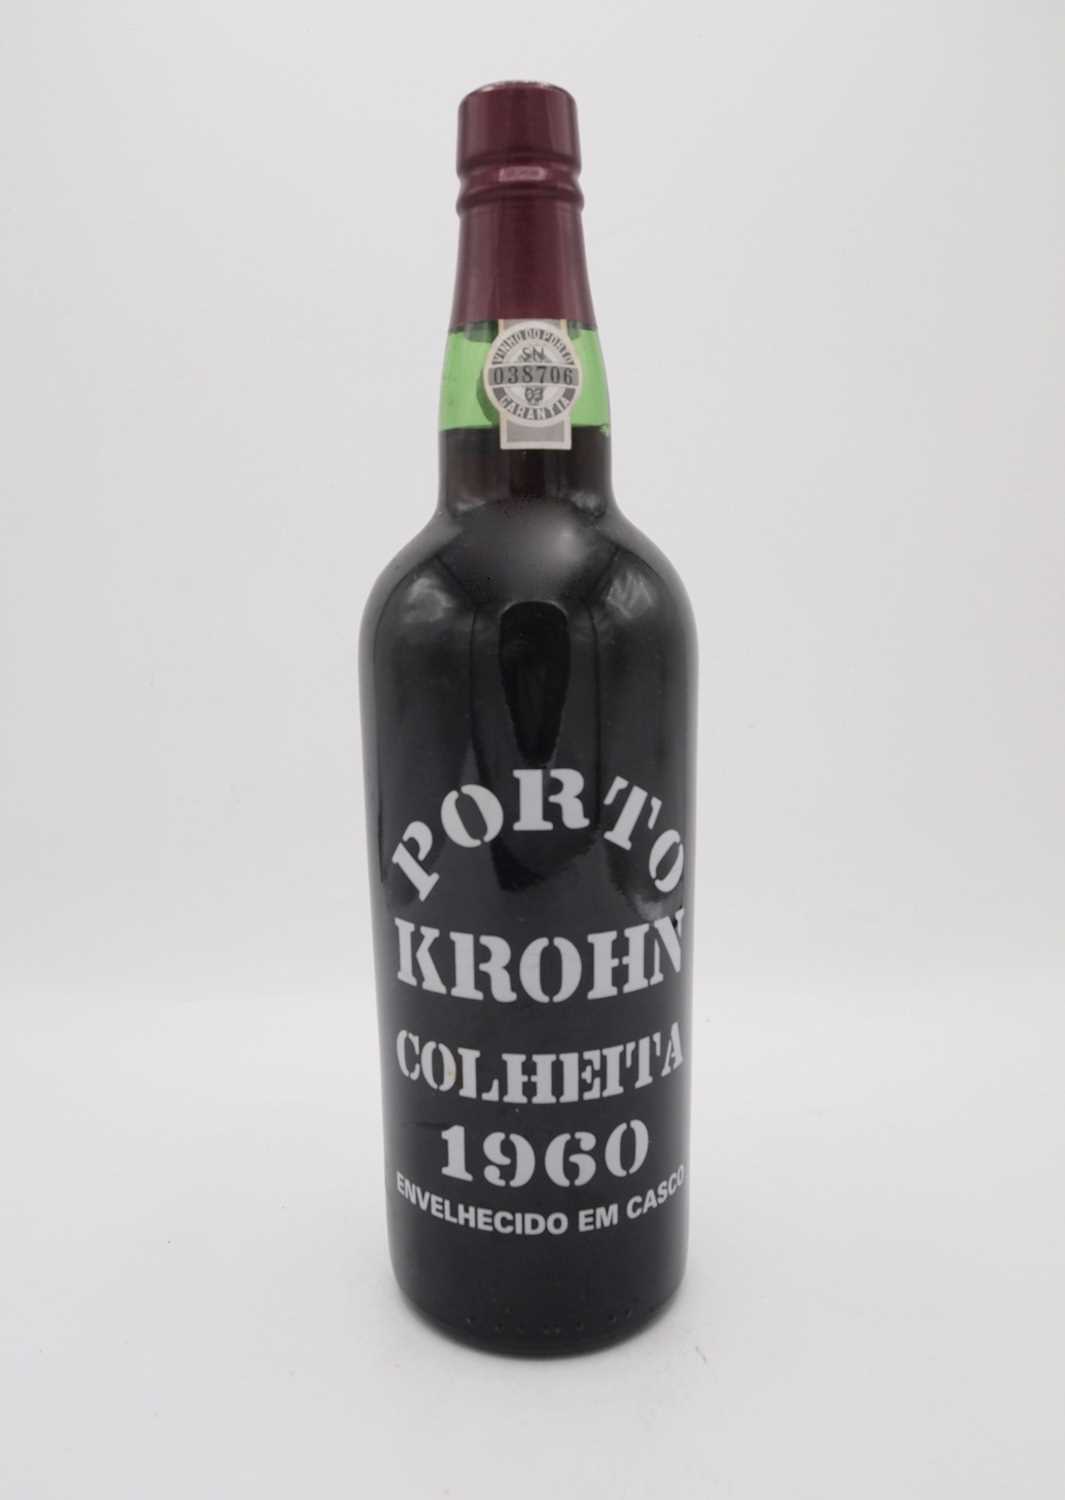 1 bottle Krohn Colheita 1960